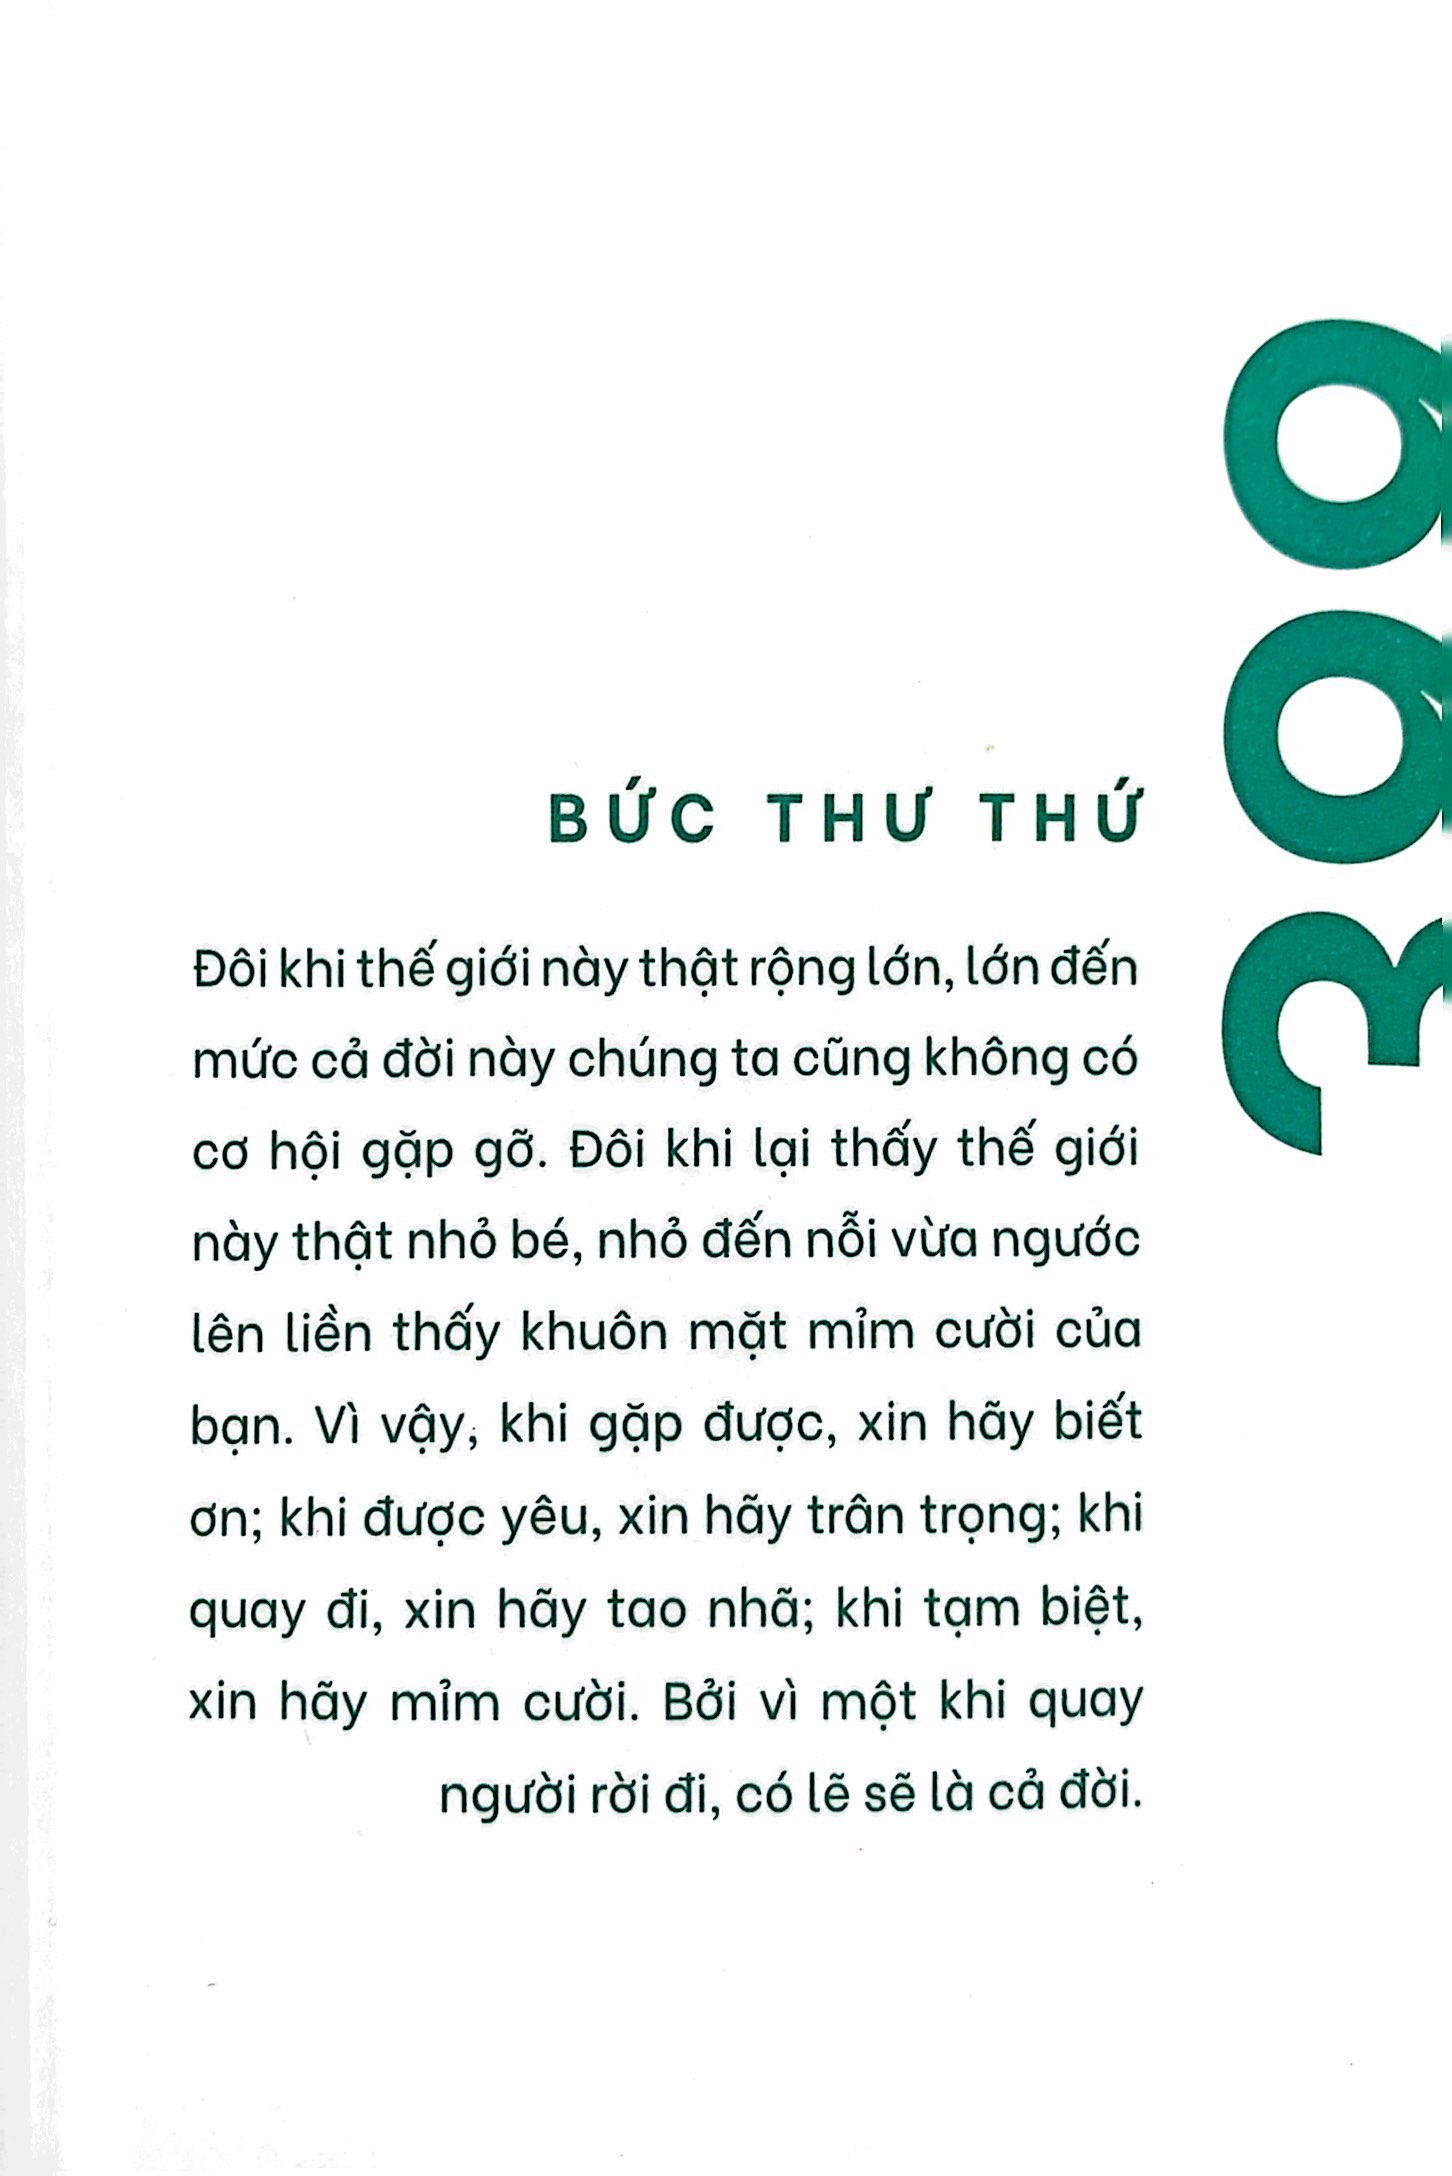 999 Lá Thư Gửi Cho Chính Mình - Phiên Bản Sổ Tay - Tập 5 PDF